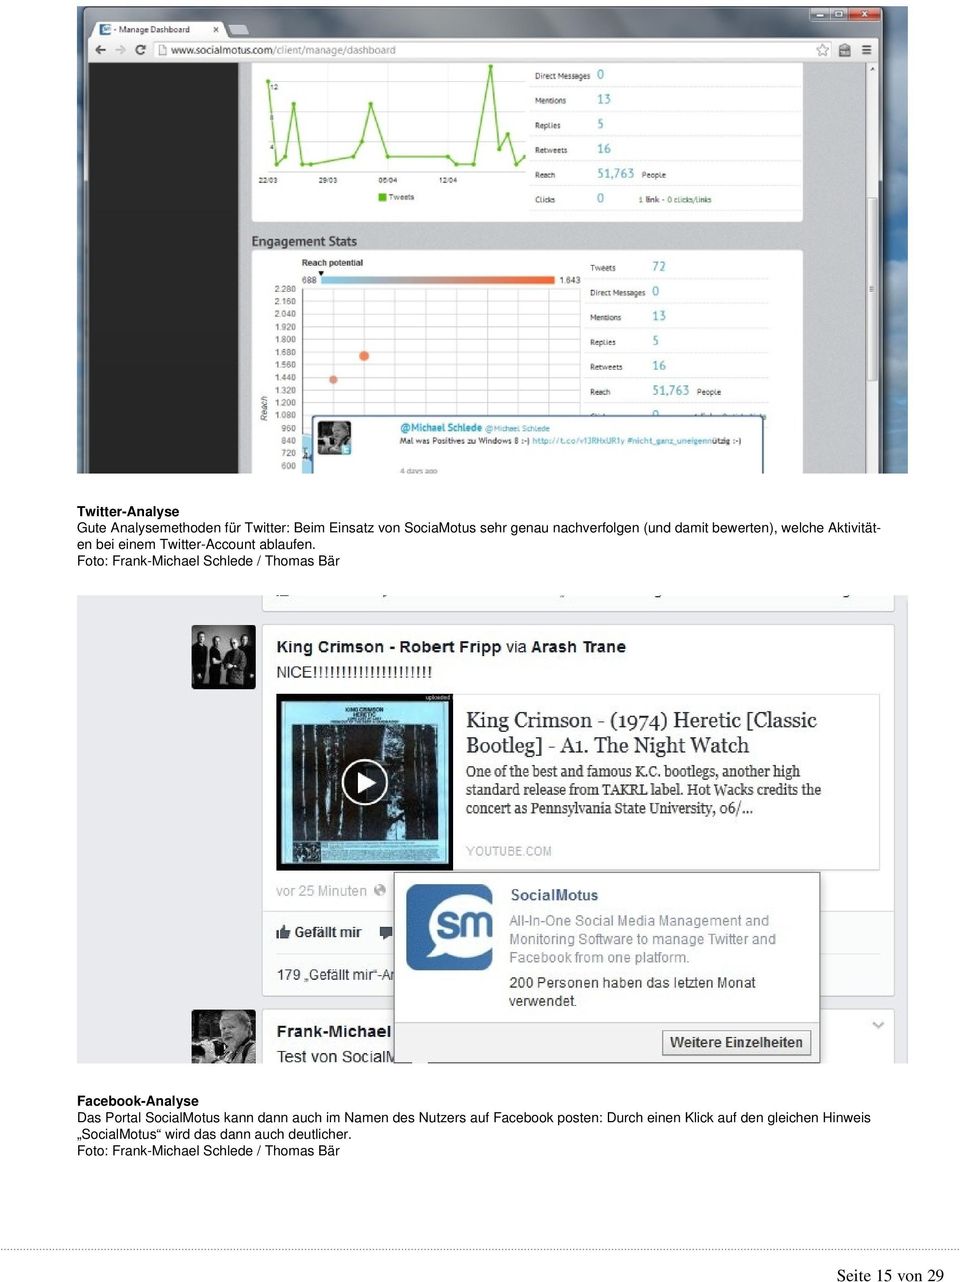 Facebook-Analyse Das Portal SocialMotus kann dann auch im Namen des Nutzers auf Facebook